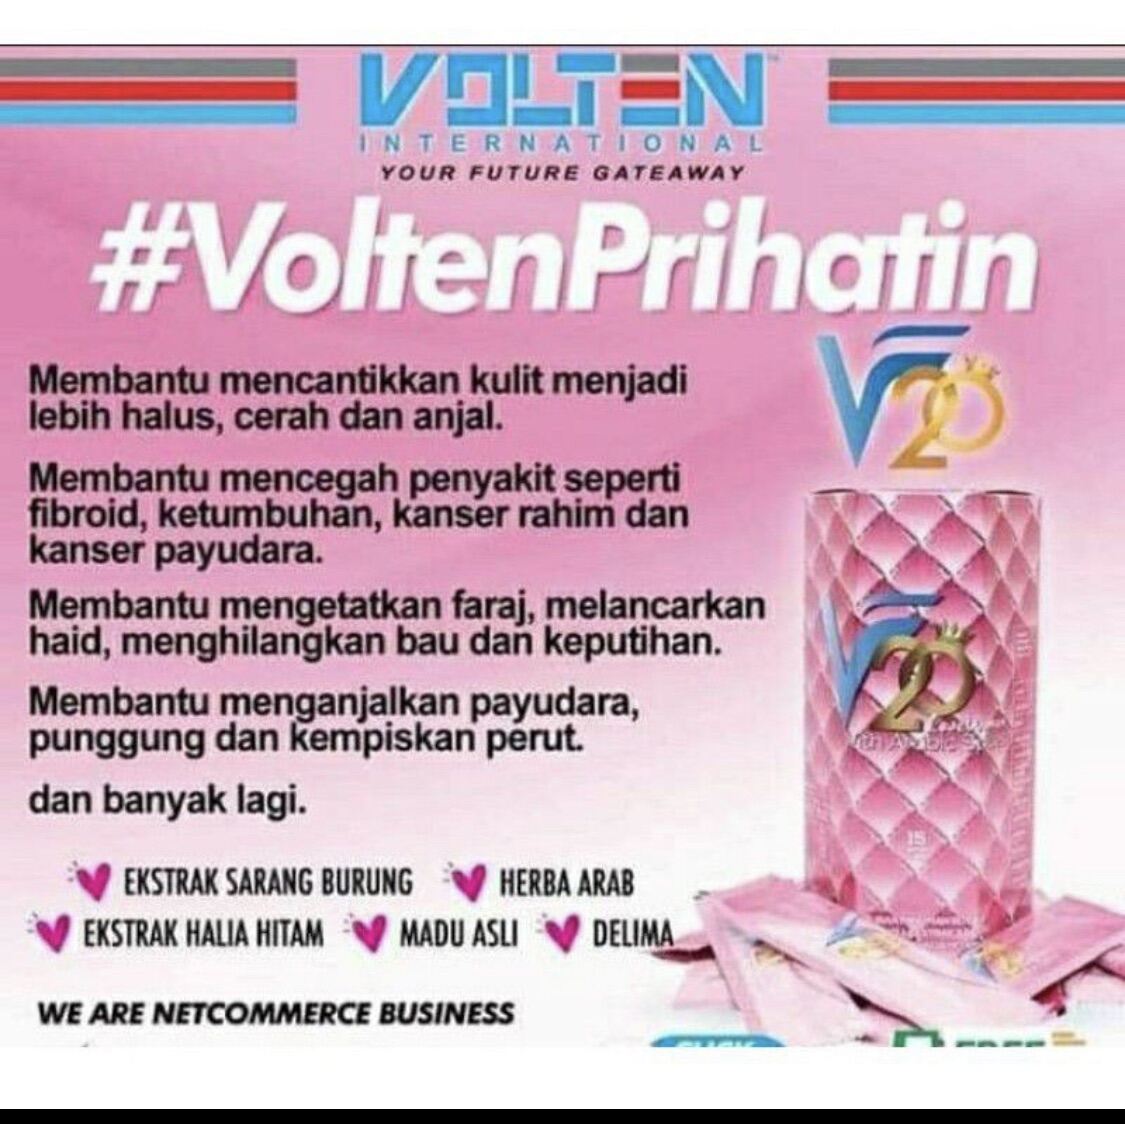 Volten V20 (15 sachets) - Best for Ladies - For Inner and external beauty